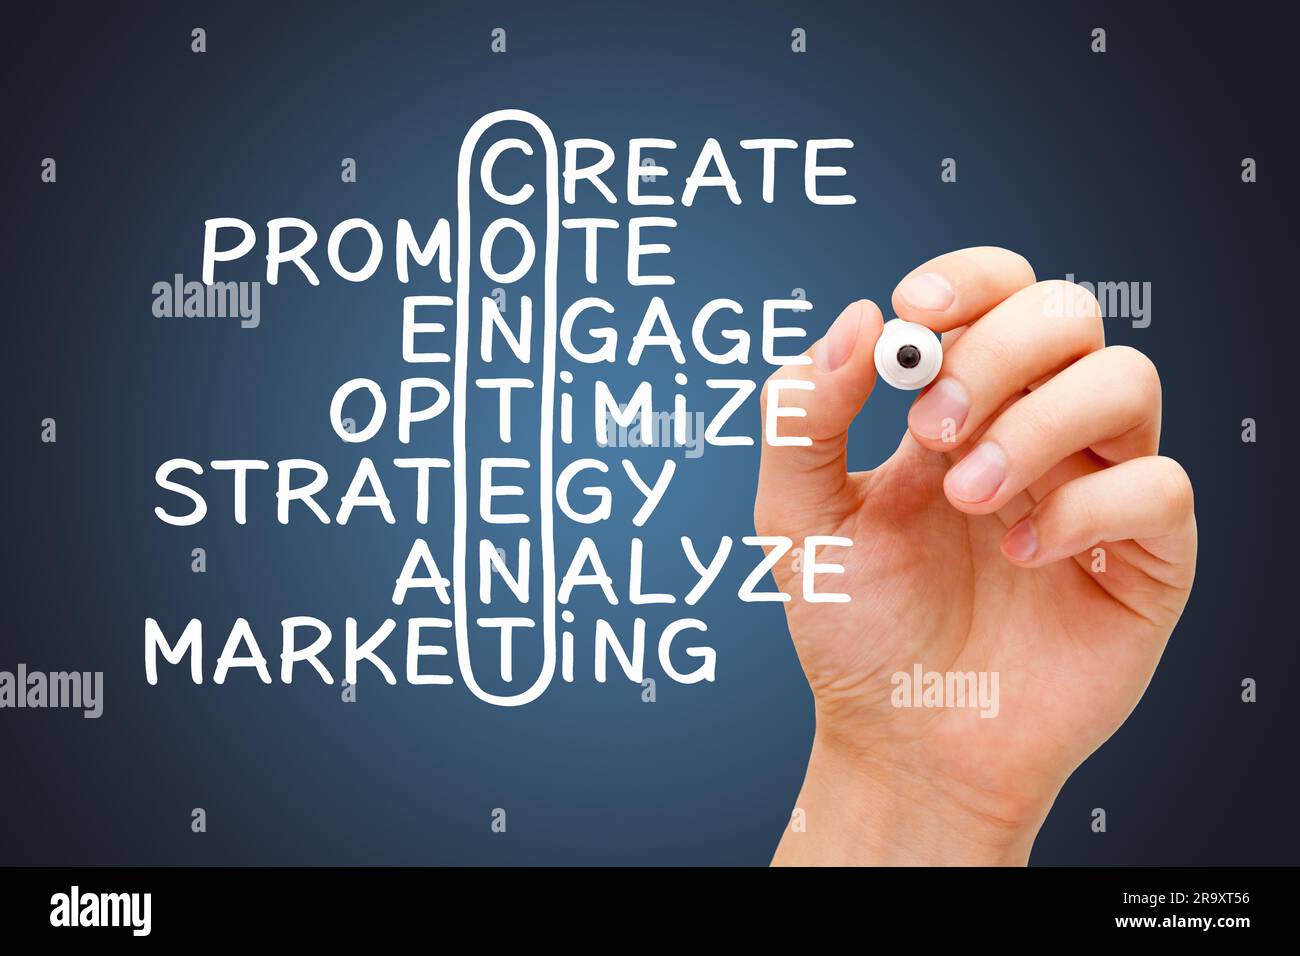 Handschriftliche Inhalte Kreuzworträtsel-Marketing-Konzept mit verwandten Begriffen erstellen, fördern, interagieren, optimieren, Strategie Analyse und Marketing. Stockfoto